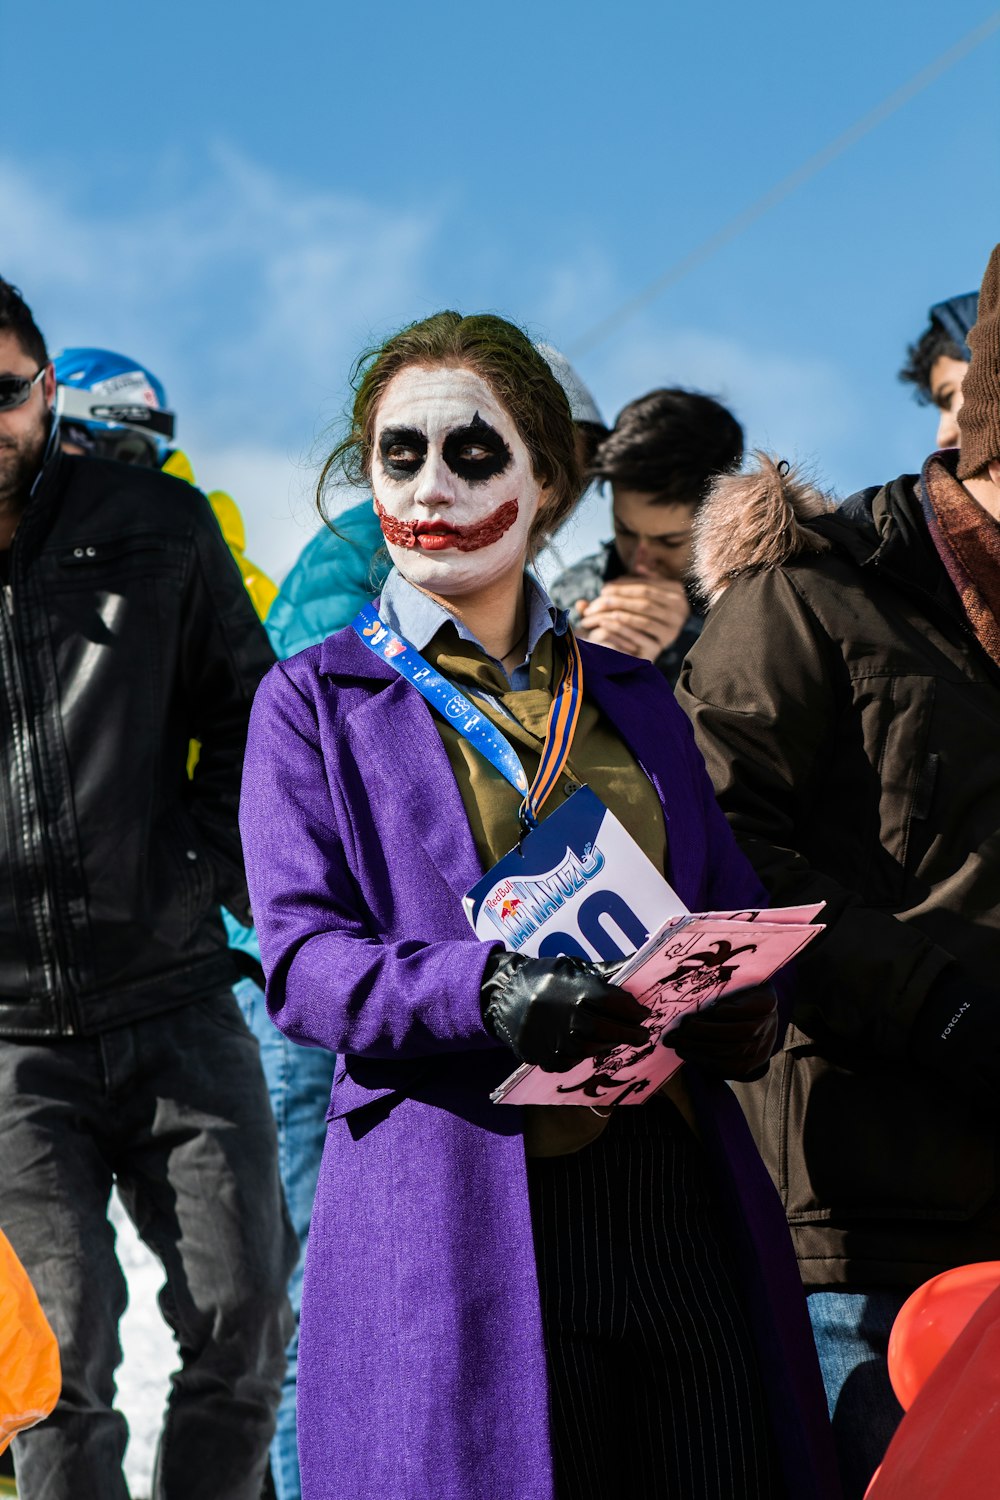 Foto zum Thema Frau im Joker-Kostüm – Kostenloses Bild zu Fest auf Unsplash